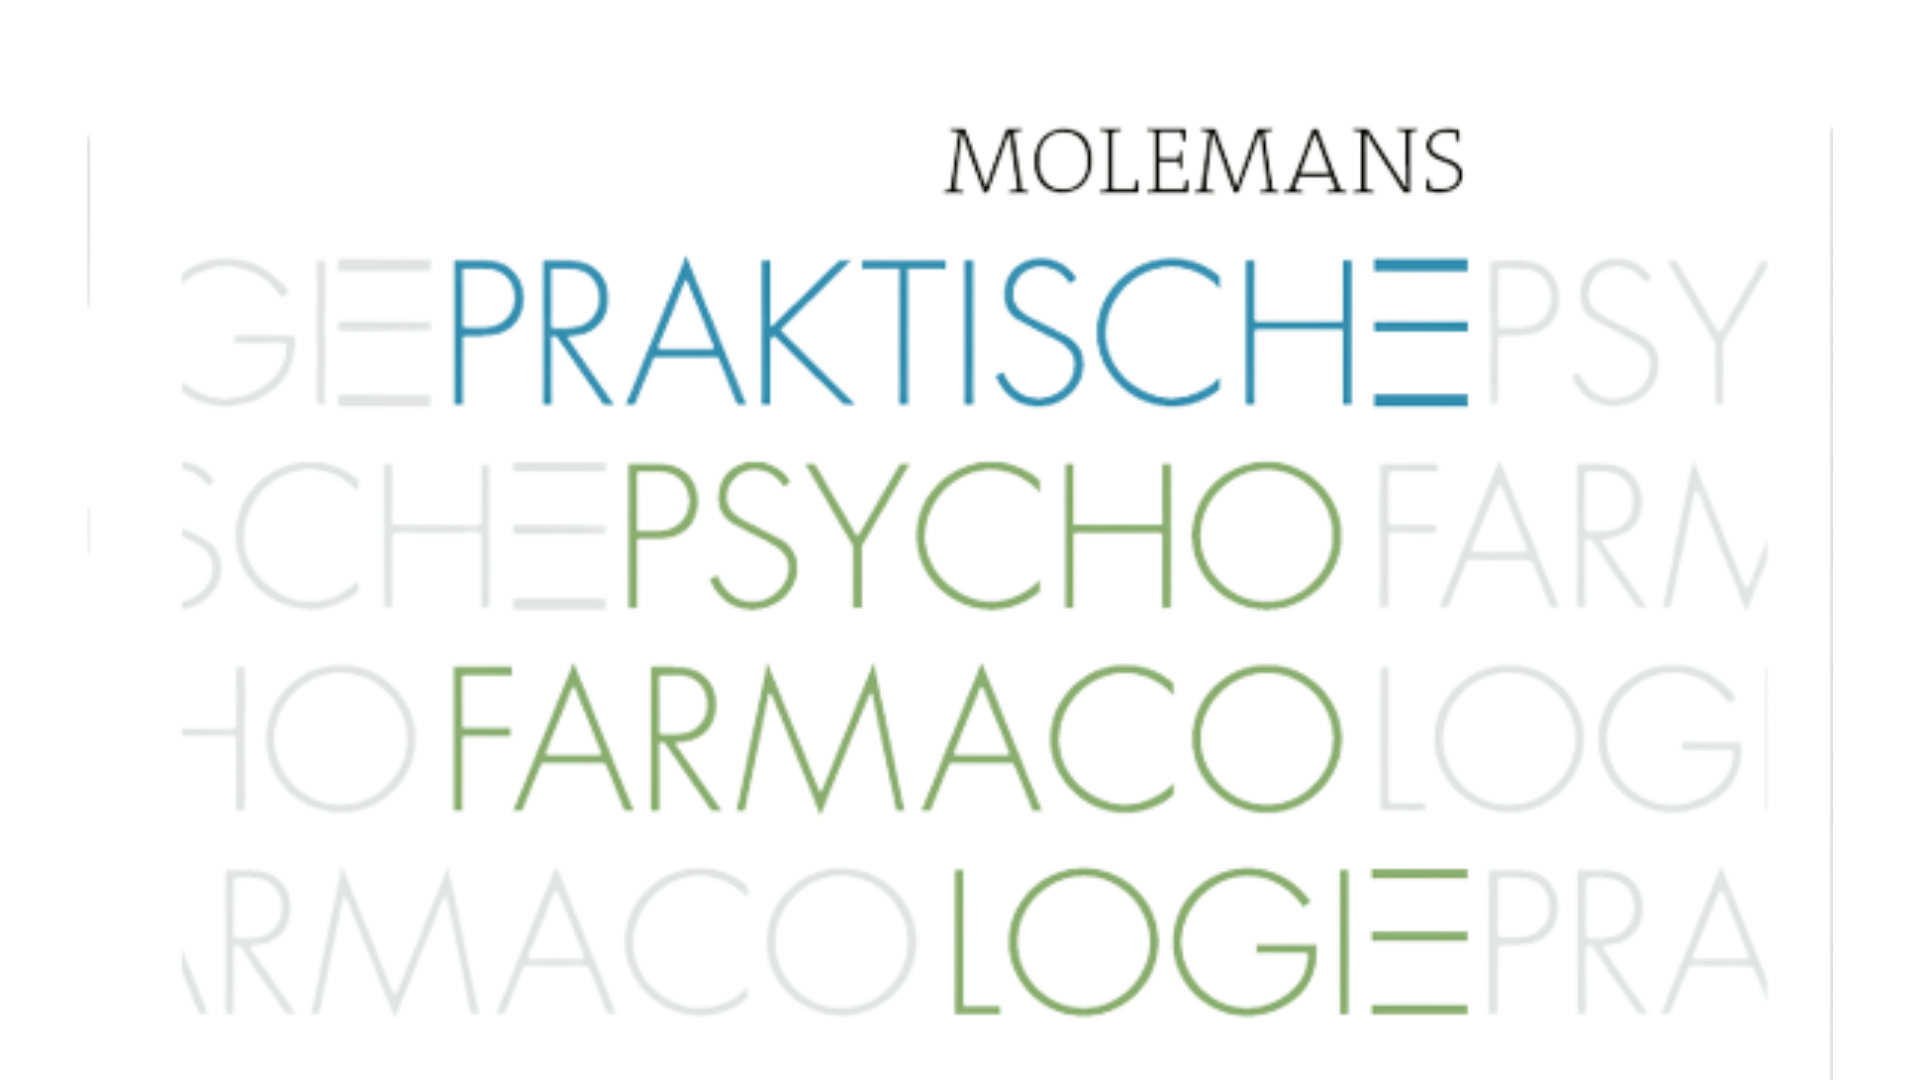 Molemans Praktische Psychofarmacologie